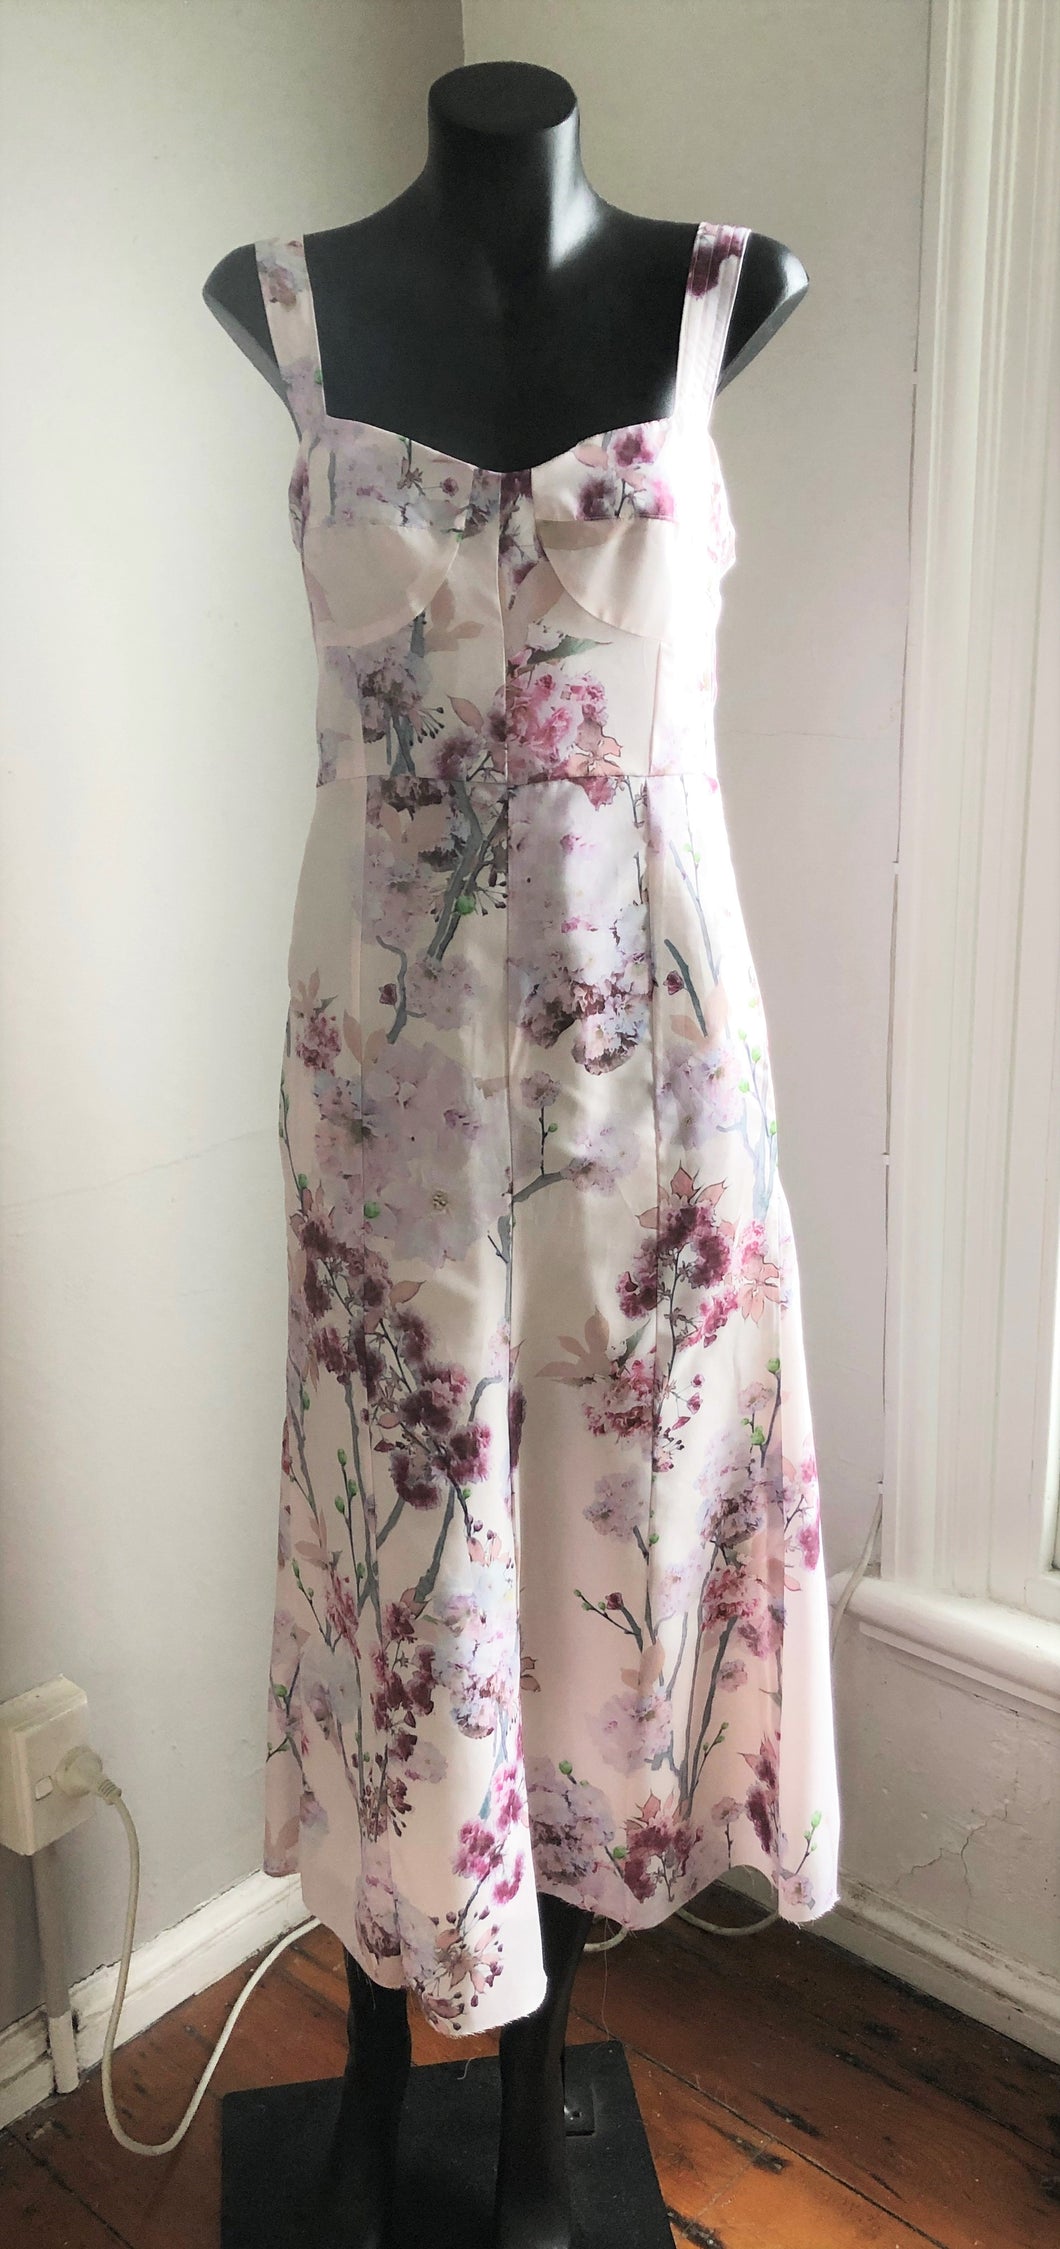 Chrystal Sloane Soft Pink Blossom Print Sundress.